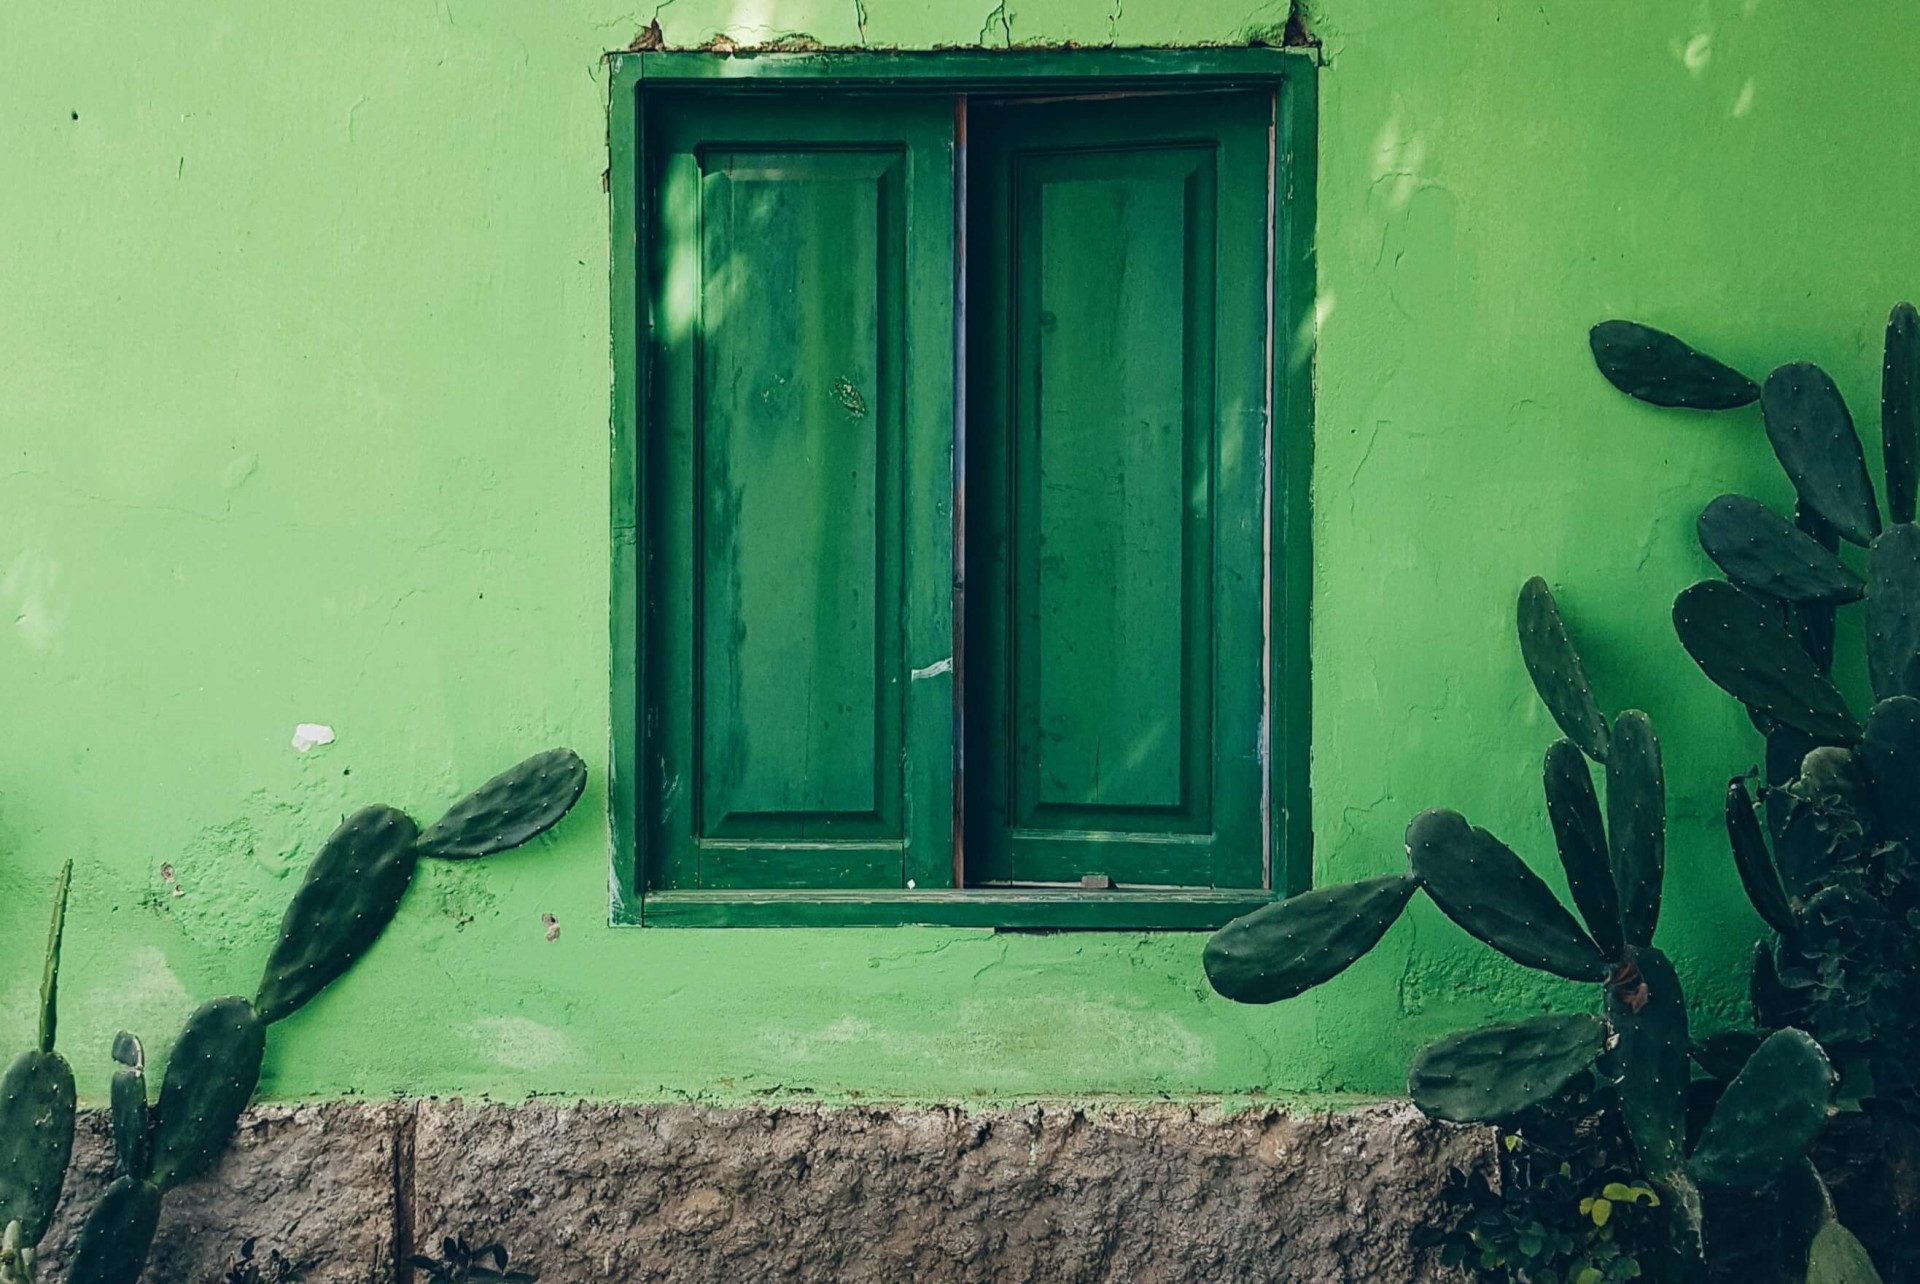 A cor verde transmite equilíbrio, harmonia e esperança.